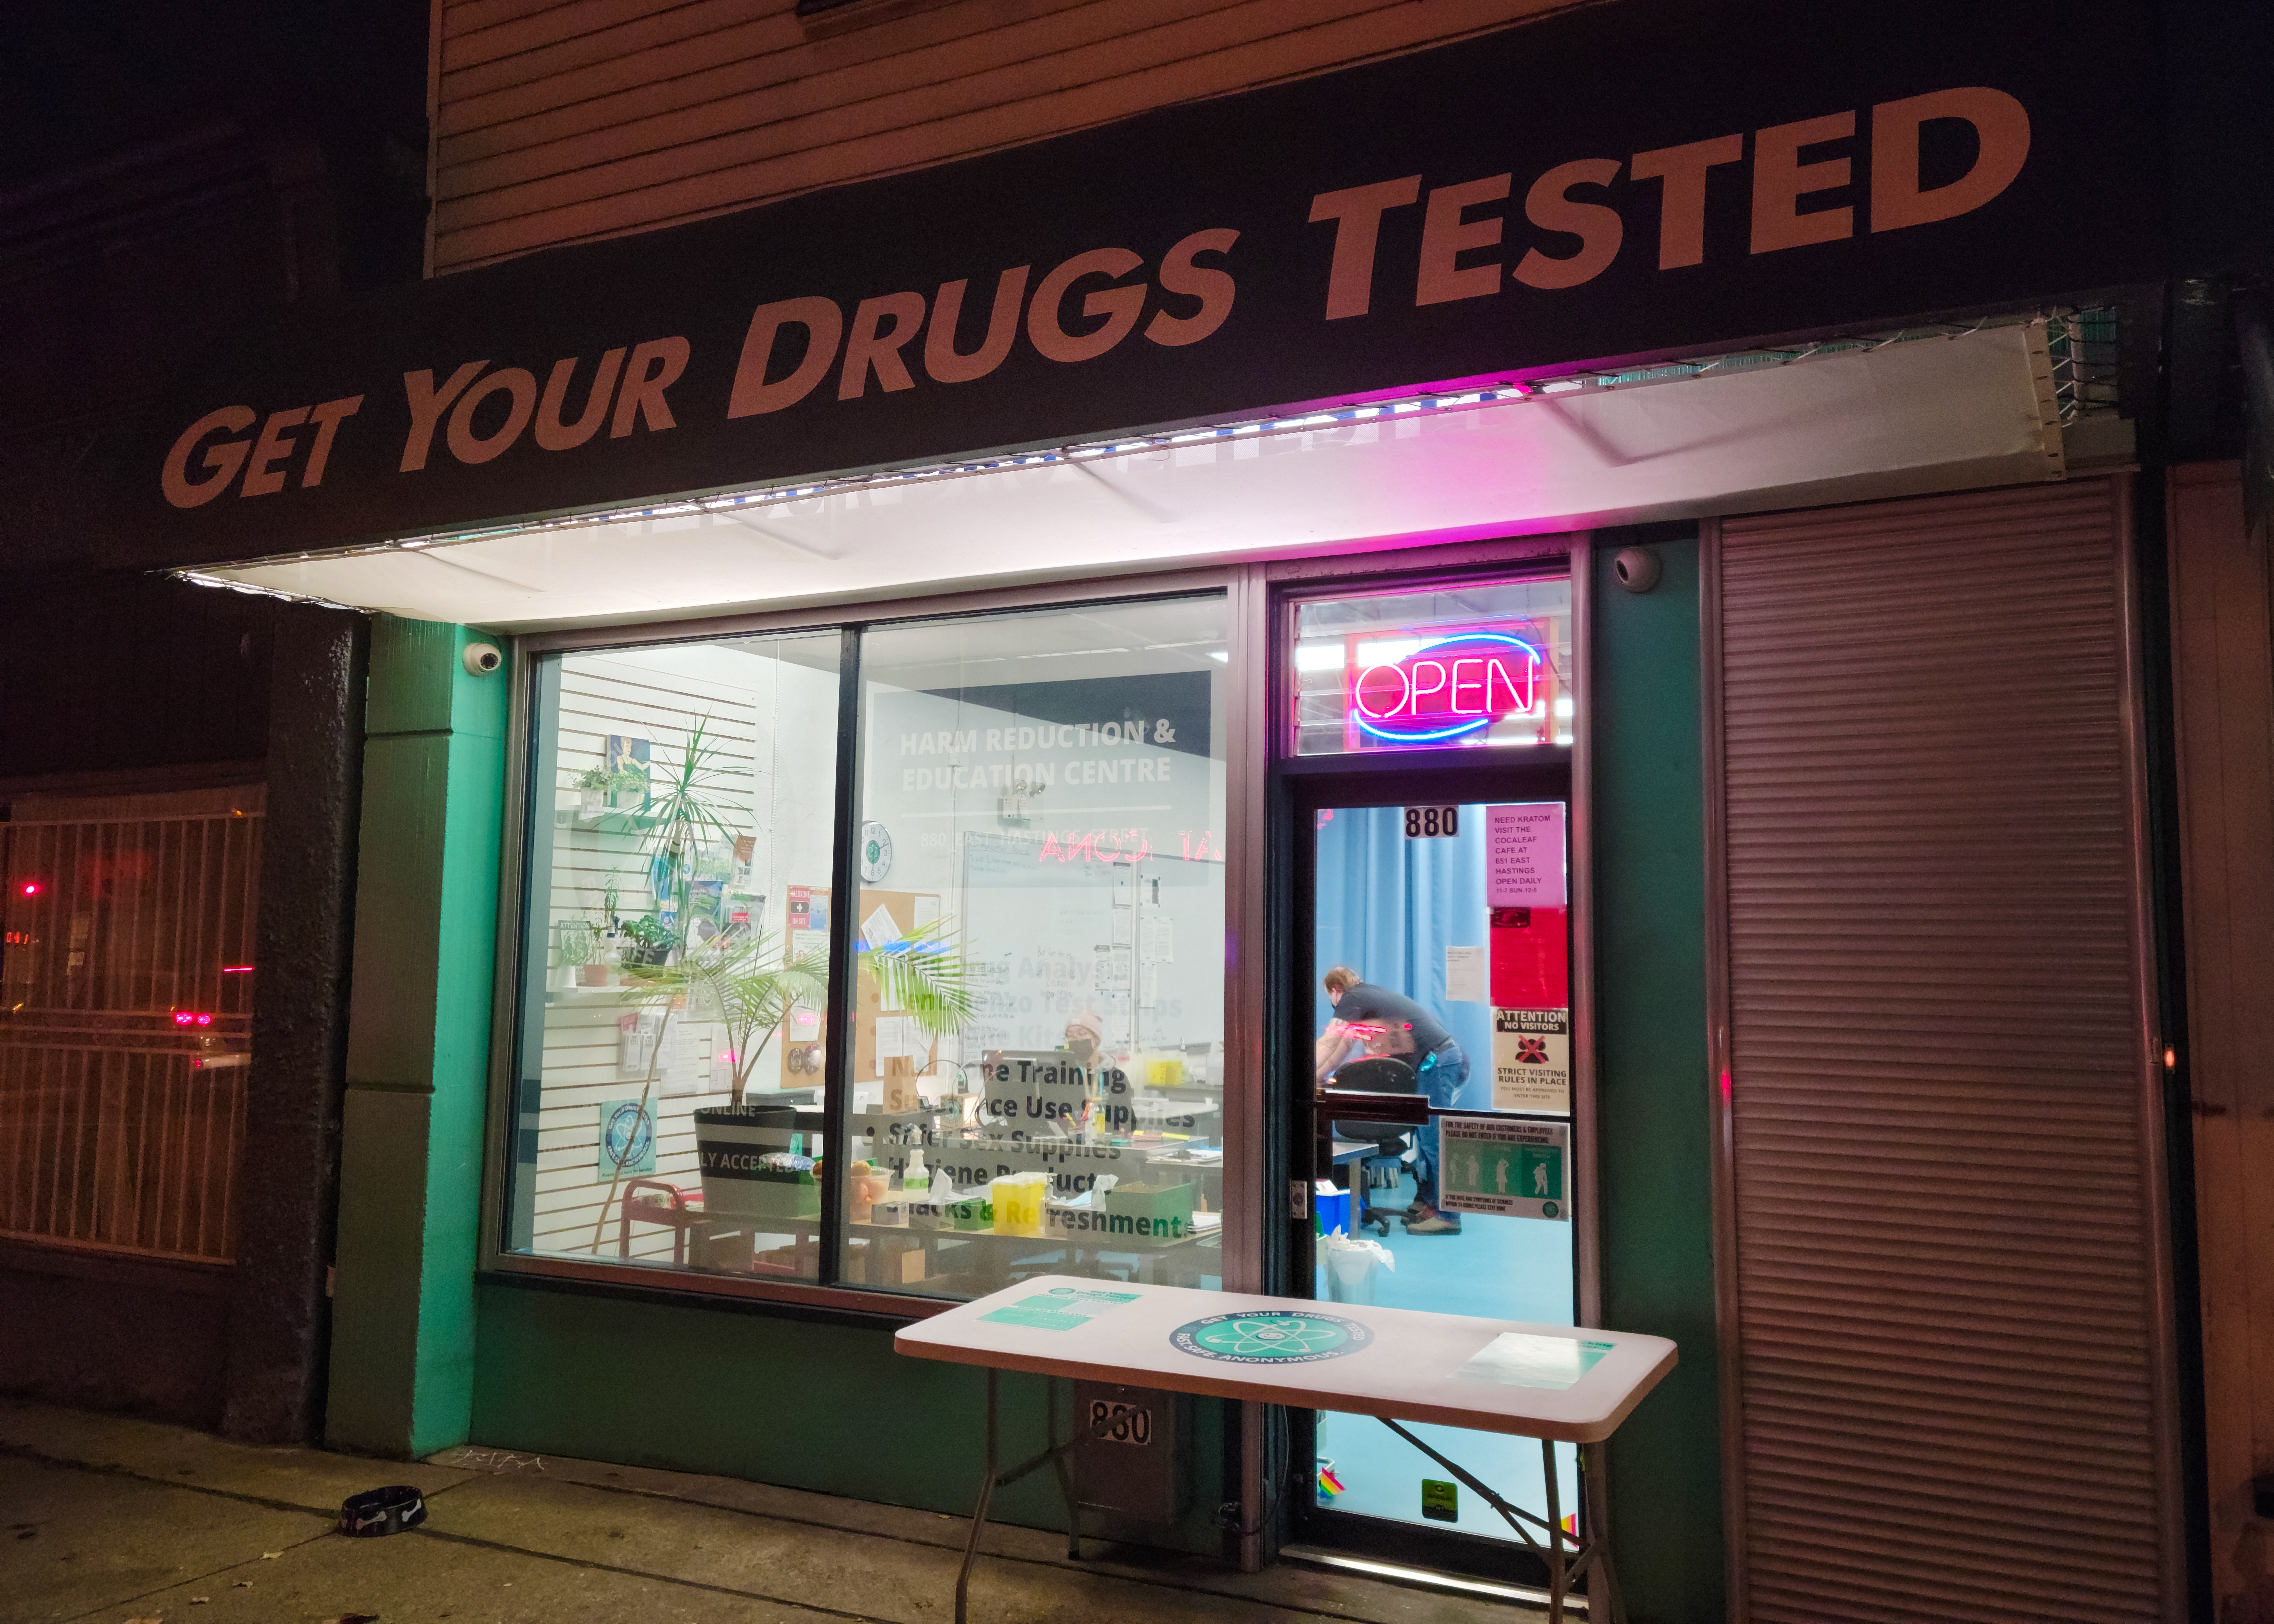 Get Your drug Tested storefront